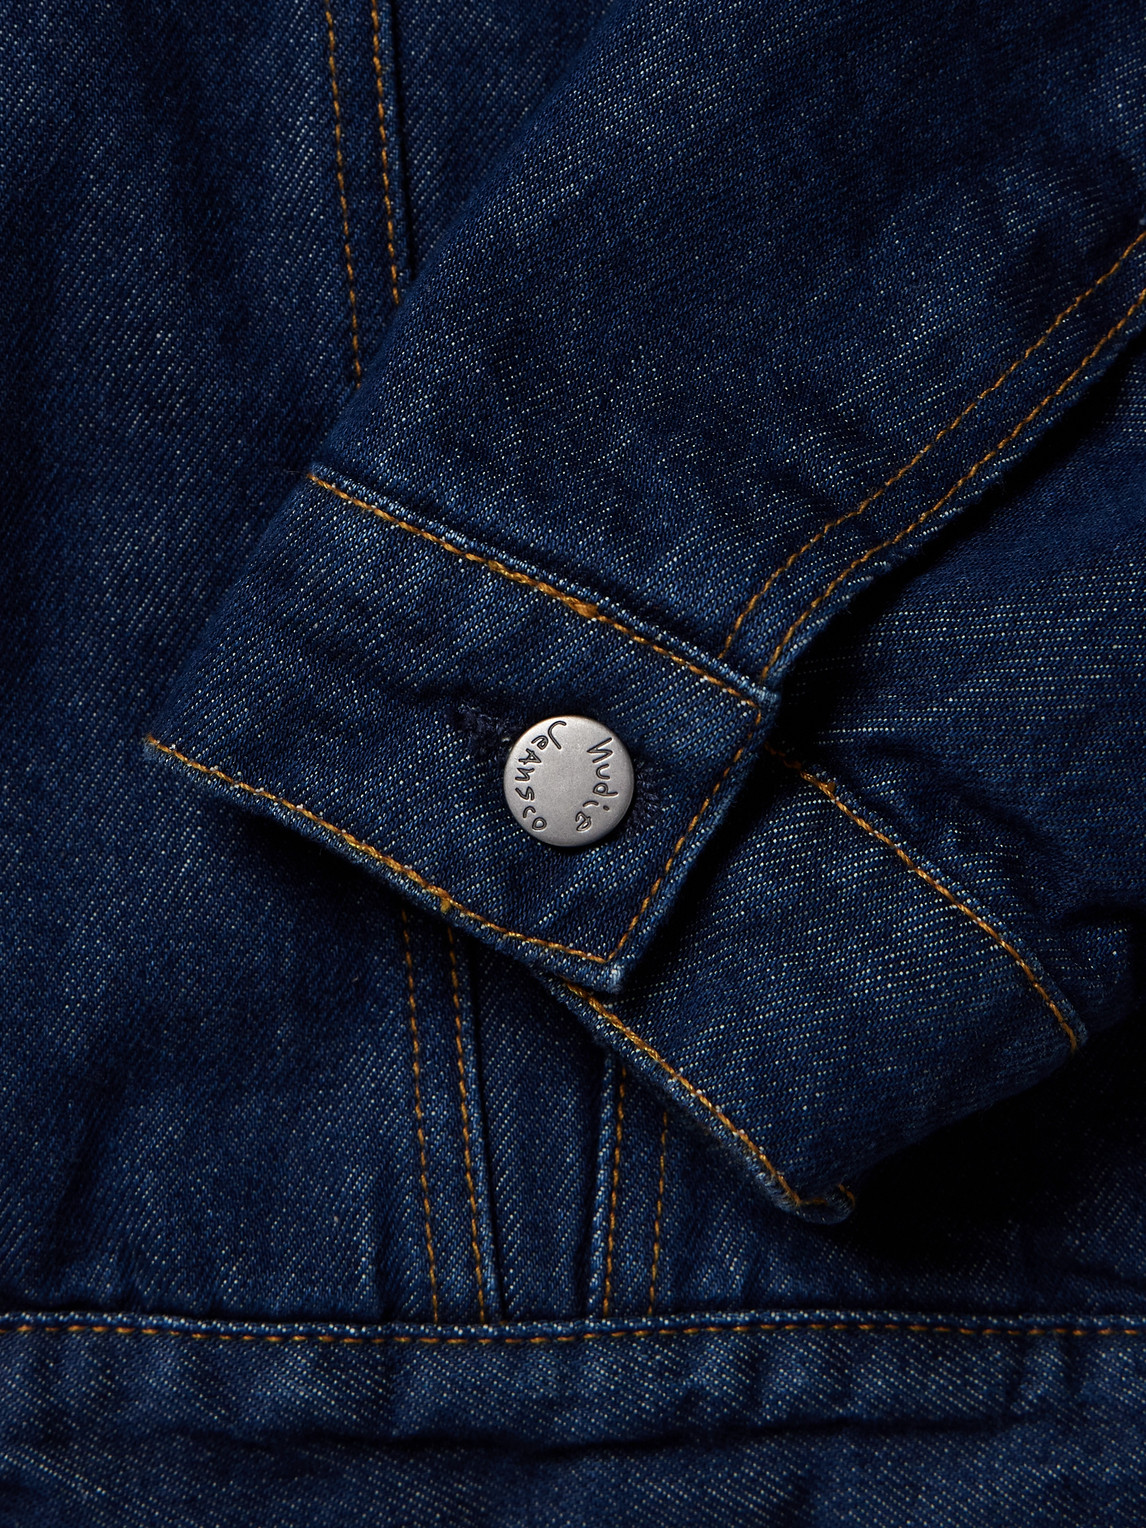 Shop Nudie Jeans Johnny Thunder Corduroy-trimmed Denim Jacket In Blue